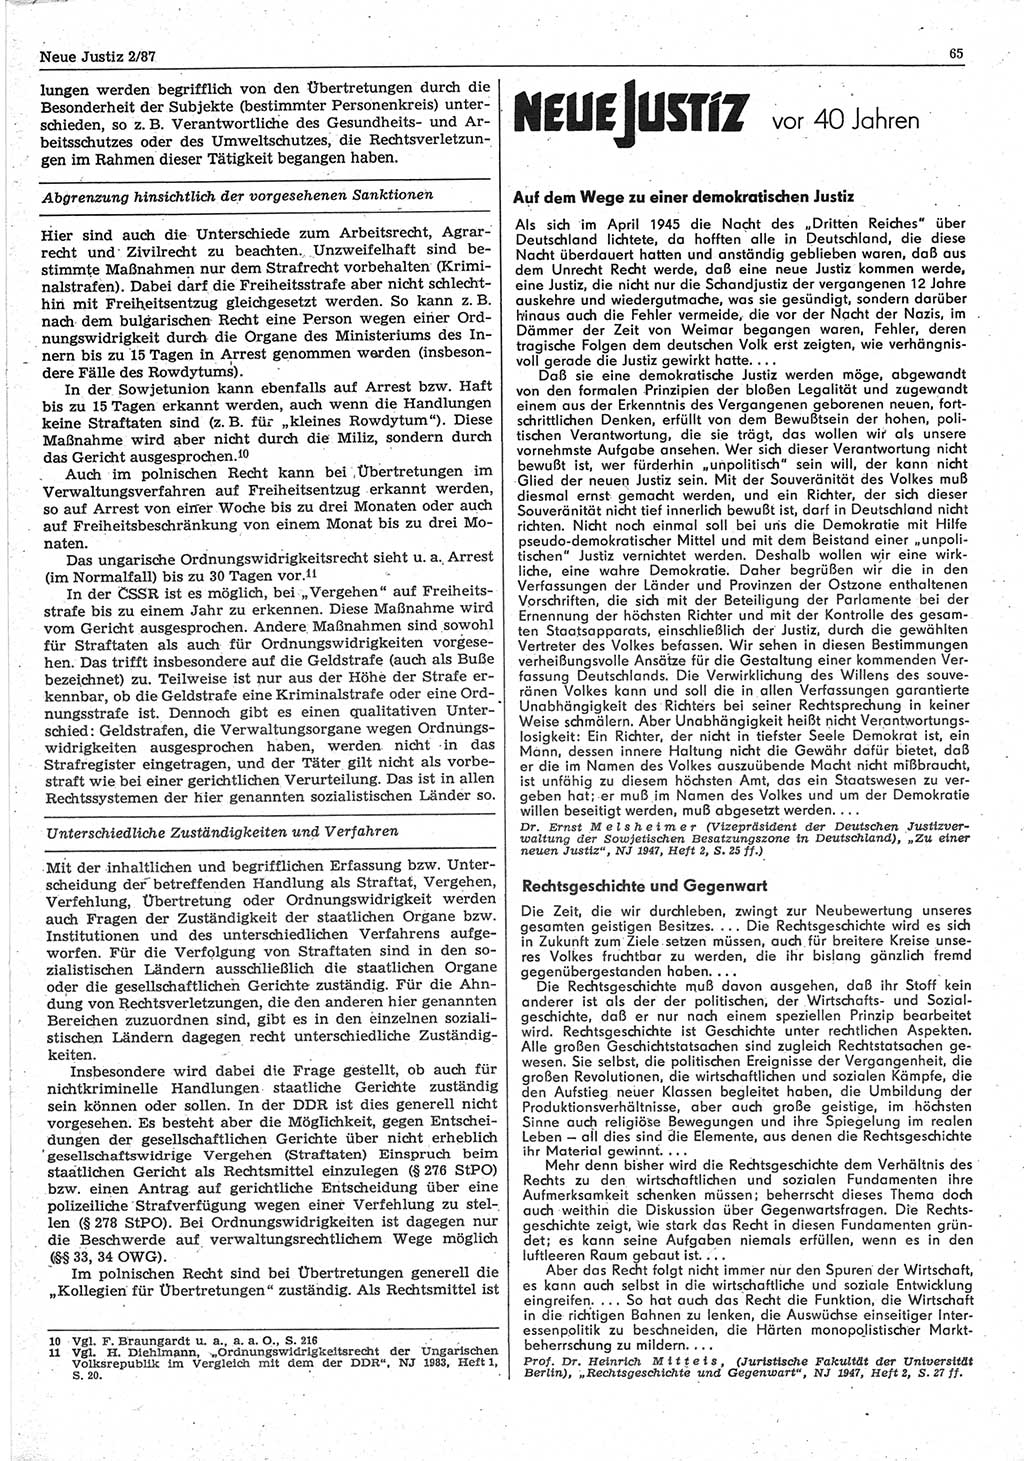 Neue Justiz (NJ), Zeitschrift für sozialistisches Recht und Gesetzlichkeit [Deutsche Demokratische Republik (DDR)], 41. Jahrgang 1987, Seite 65 (NJ DDR 1987, S. 65)